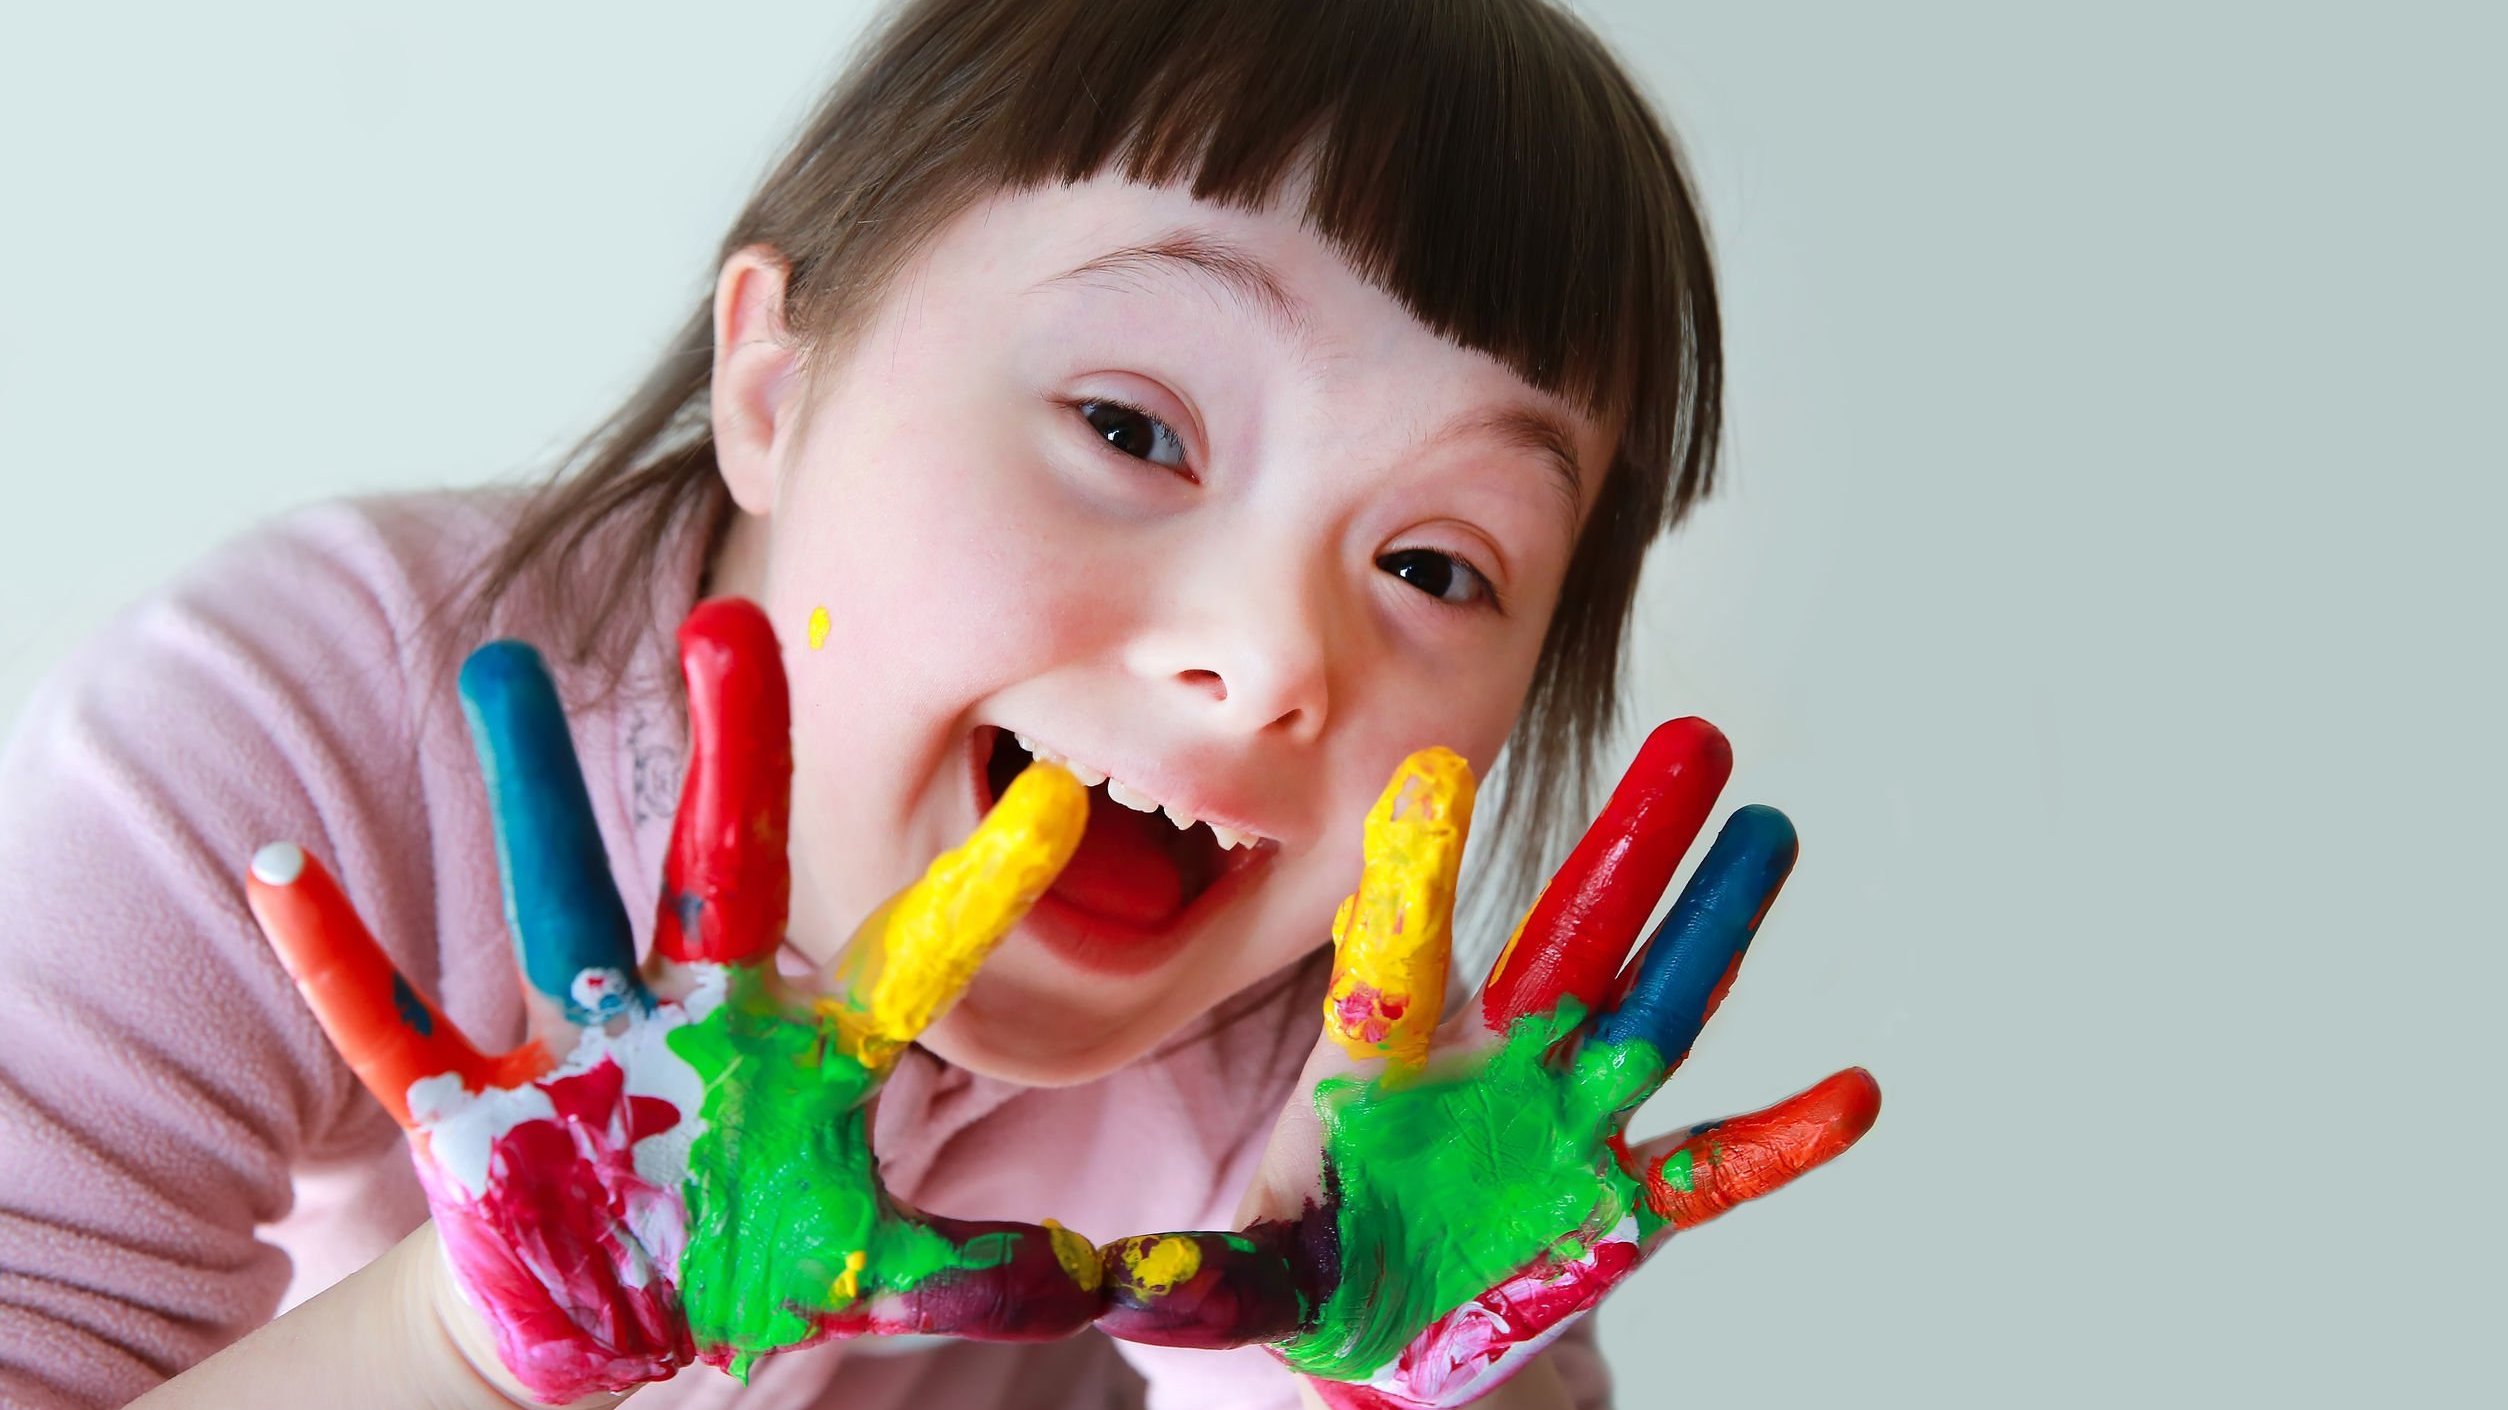 Garota com Síndrome de Down de mãos sujas de tintas coloridas sorrindo